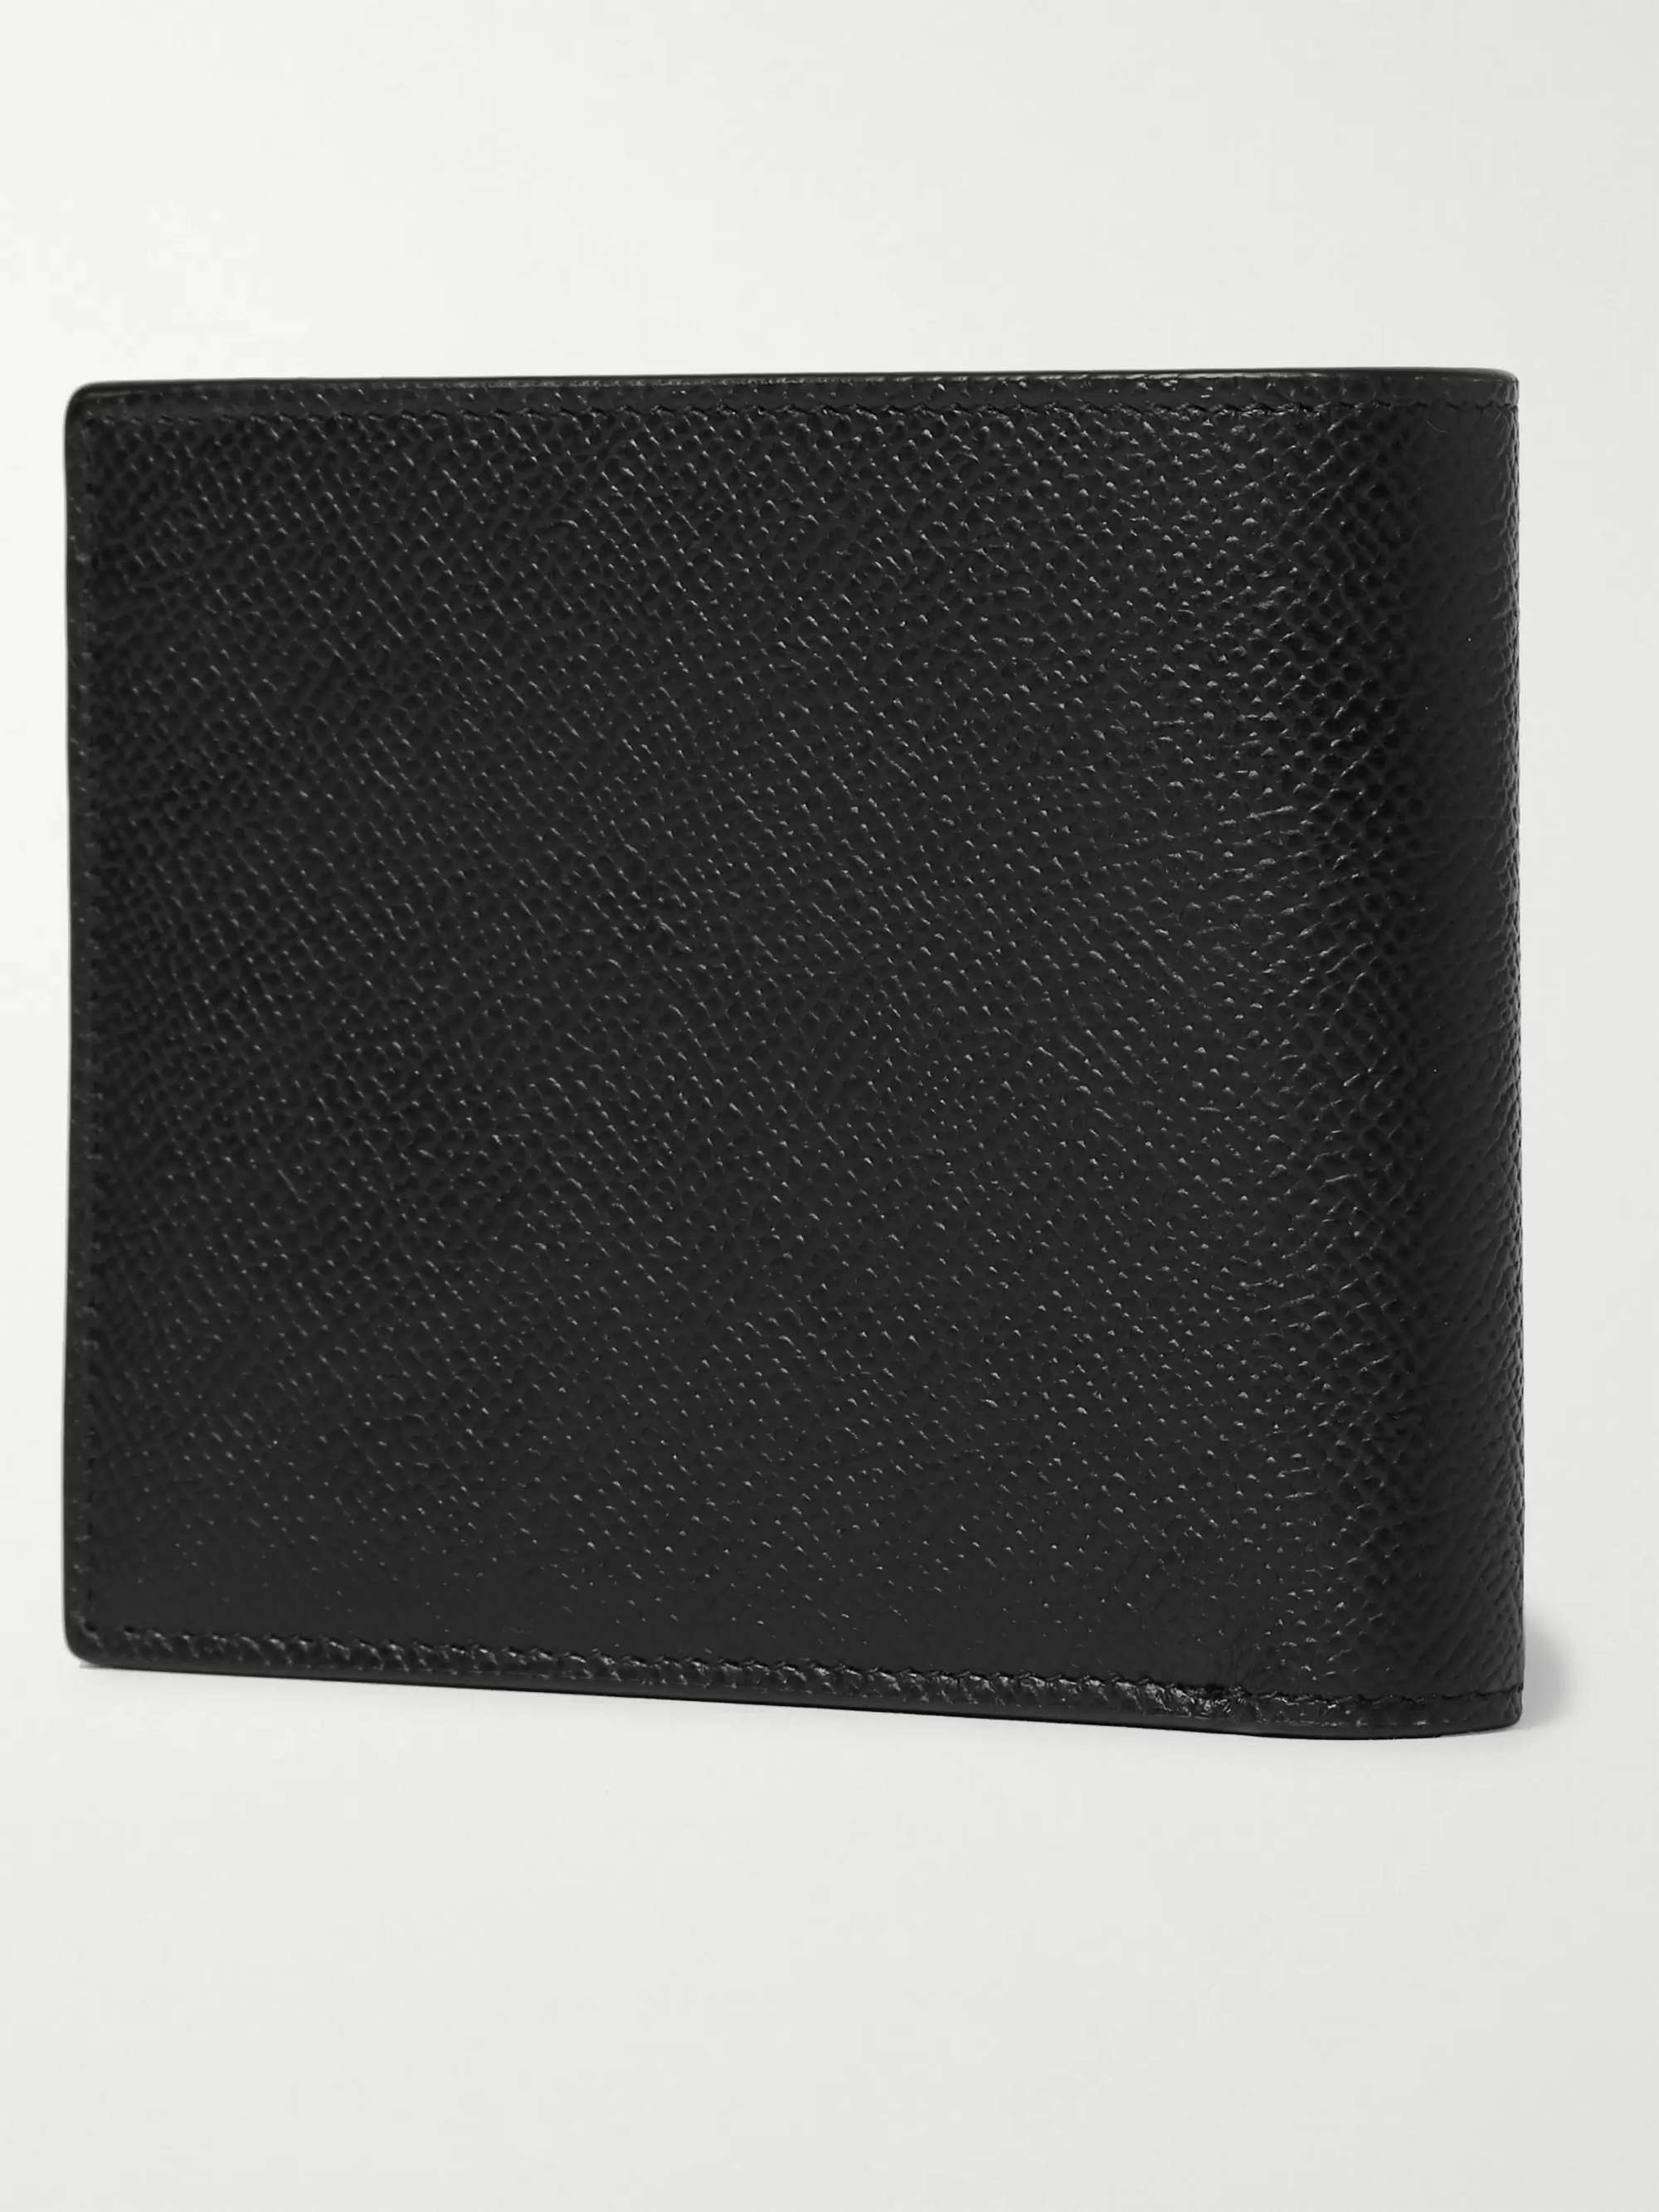 Black Cadogan Full-Grain Leather Billfold Wallet | DUNHILL | MR PORTER